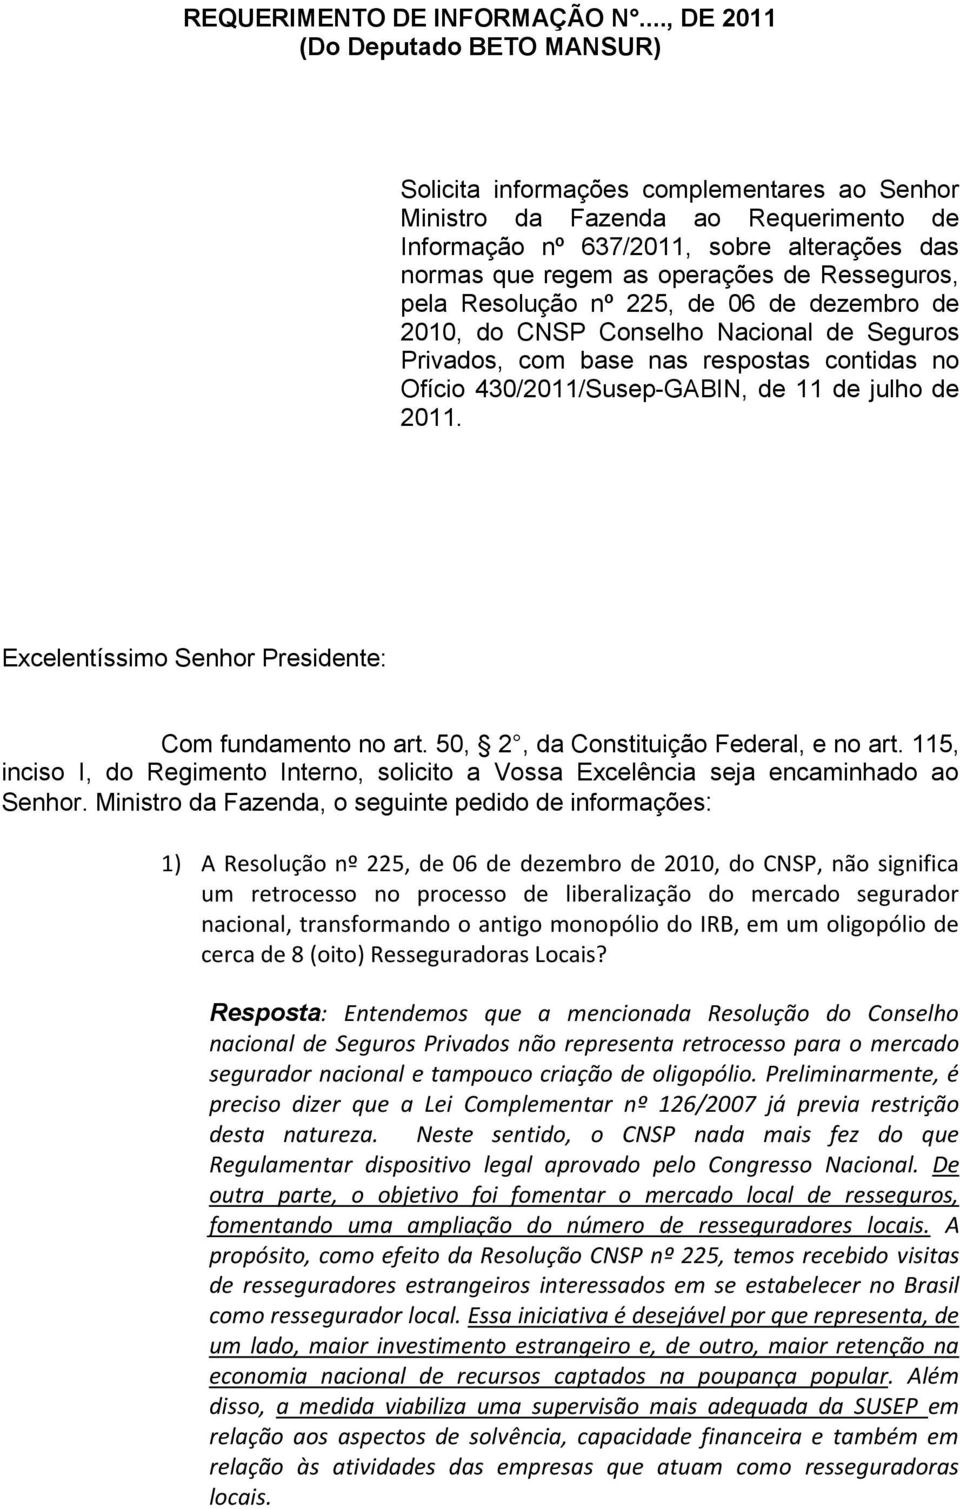 de Resseguros, pela Resolução nº 225, de 06 de dezembro de 2010, do CNSP Conselho Nacional de Seguros Privados, com base nas respostas contidas no Ofício 430/2011/Susep-GABIN, de 11 de julho de 2011.